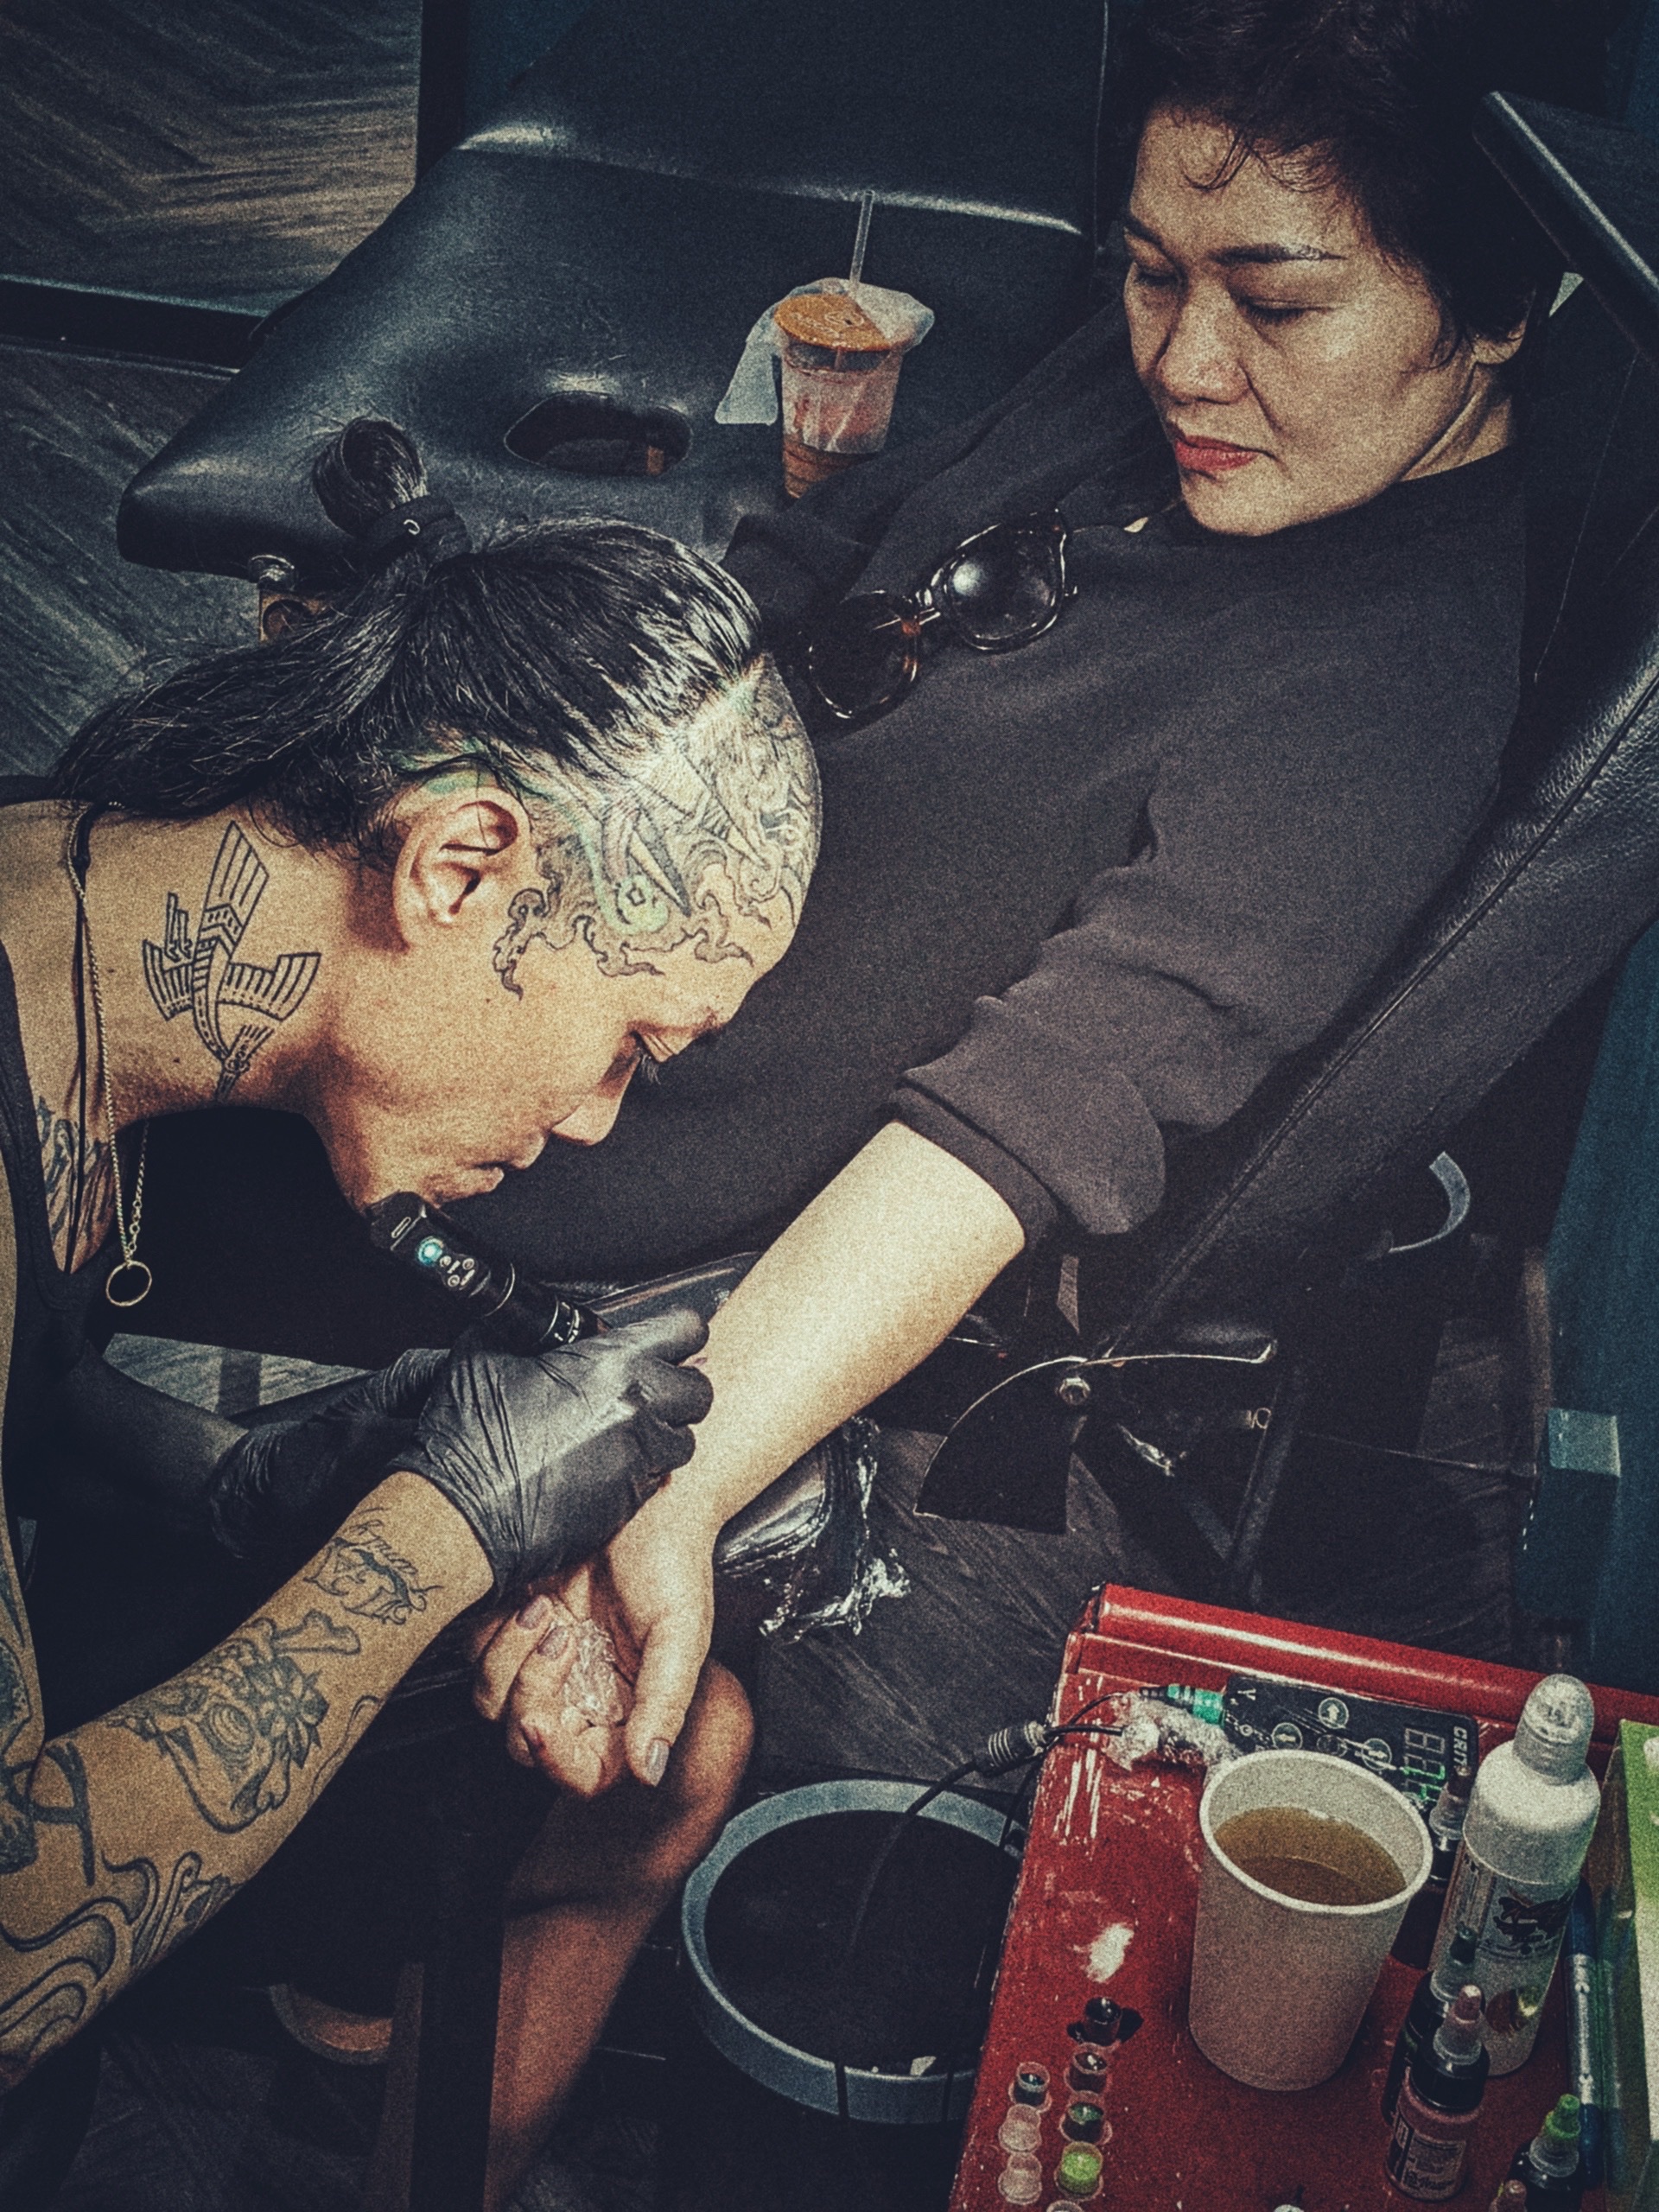 Năm 2024, cộng đồng tattoo sẽ biết về một tattoo artist có tình yêu và lòng biết ơn đặc biệt dành cho mẹ của anh ta. Đó là việc anh ta khắc hình mẹ mình lên cánh tay và luôn luôn nghĩ đến mẹ khi anh ta đang làm việc và khi anh ta gặp khó khăn trong cuộc sống.